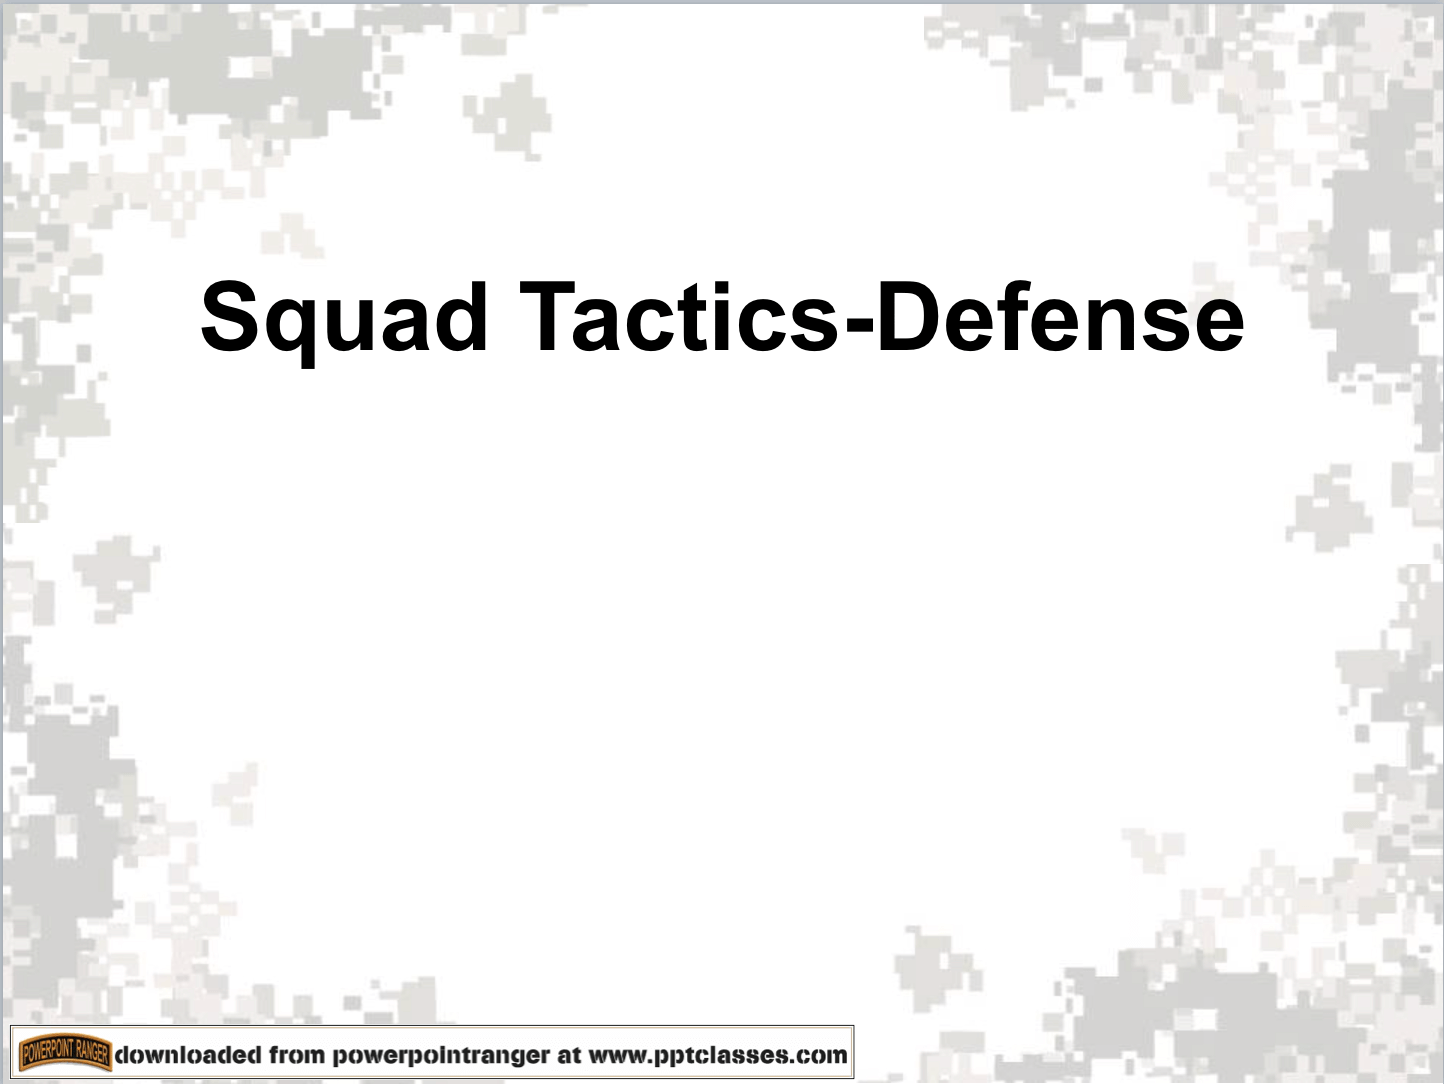 Squad Tactics (Defense)